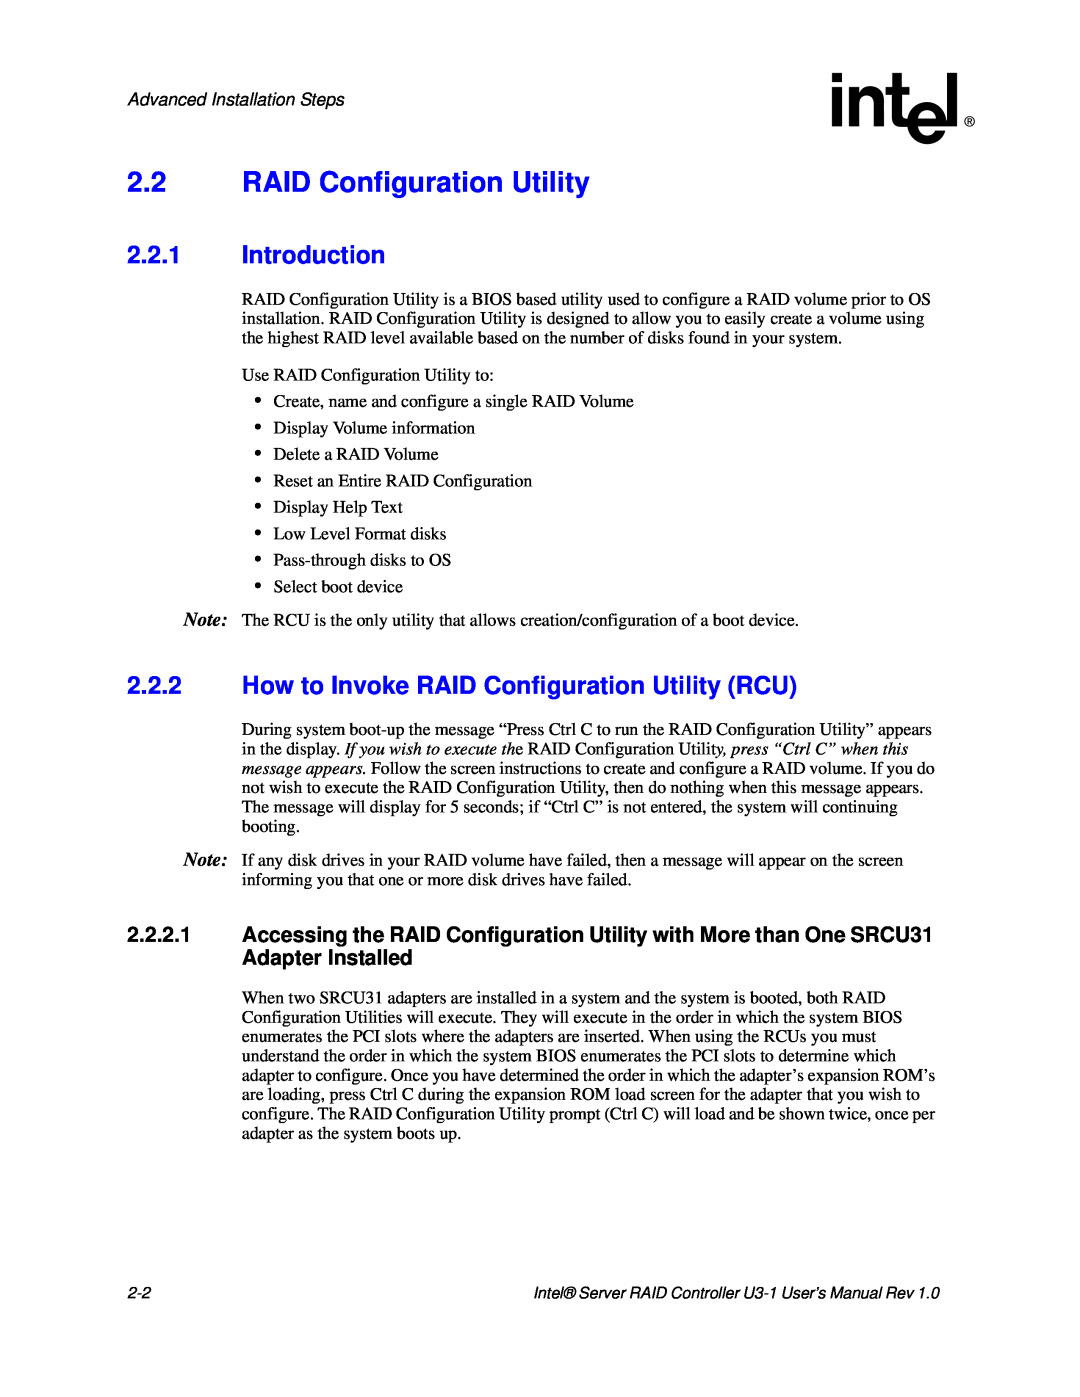 Intel SRCU31 2.2RAID Configuration Utility, 2.2.1Introduction, 2.2.2How to Invoke RAID Configuration Utility RCU 